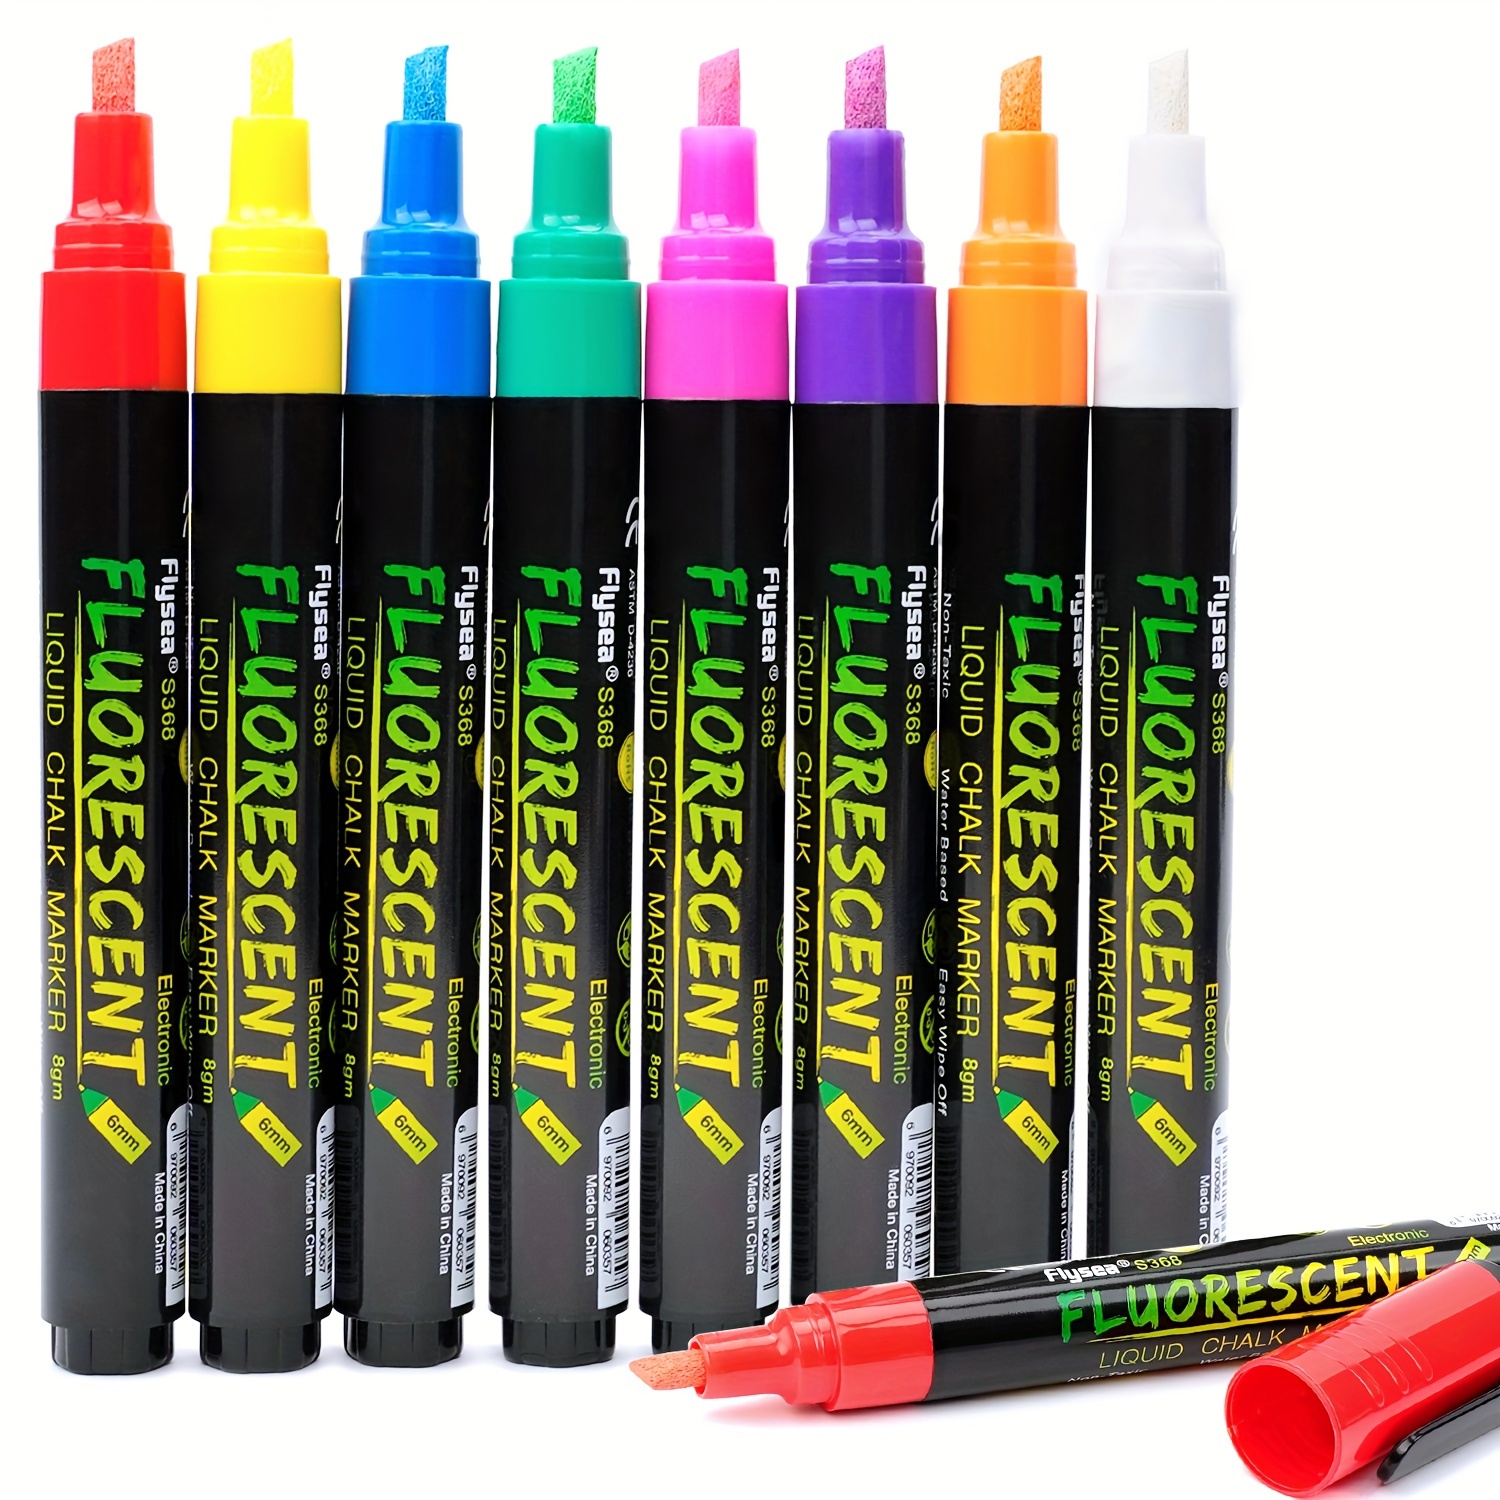 8 12 colors Fine Bullet Tip Liquid Chalk Markers Chalkboard Window